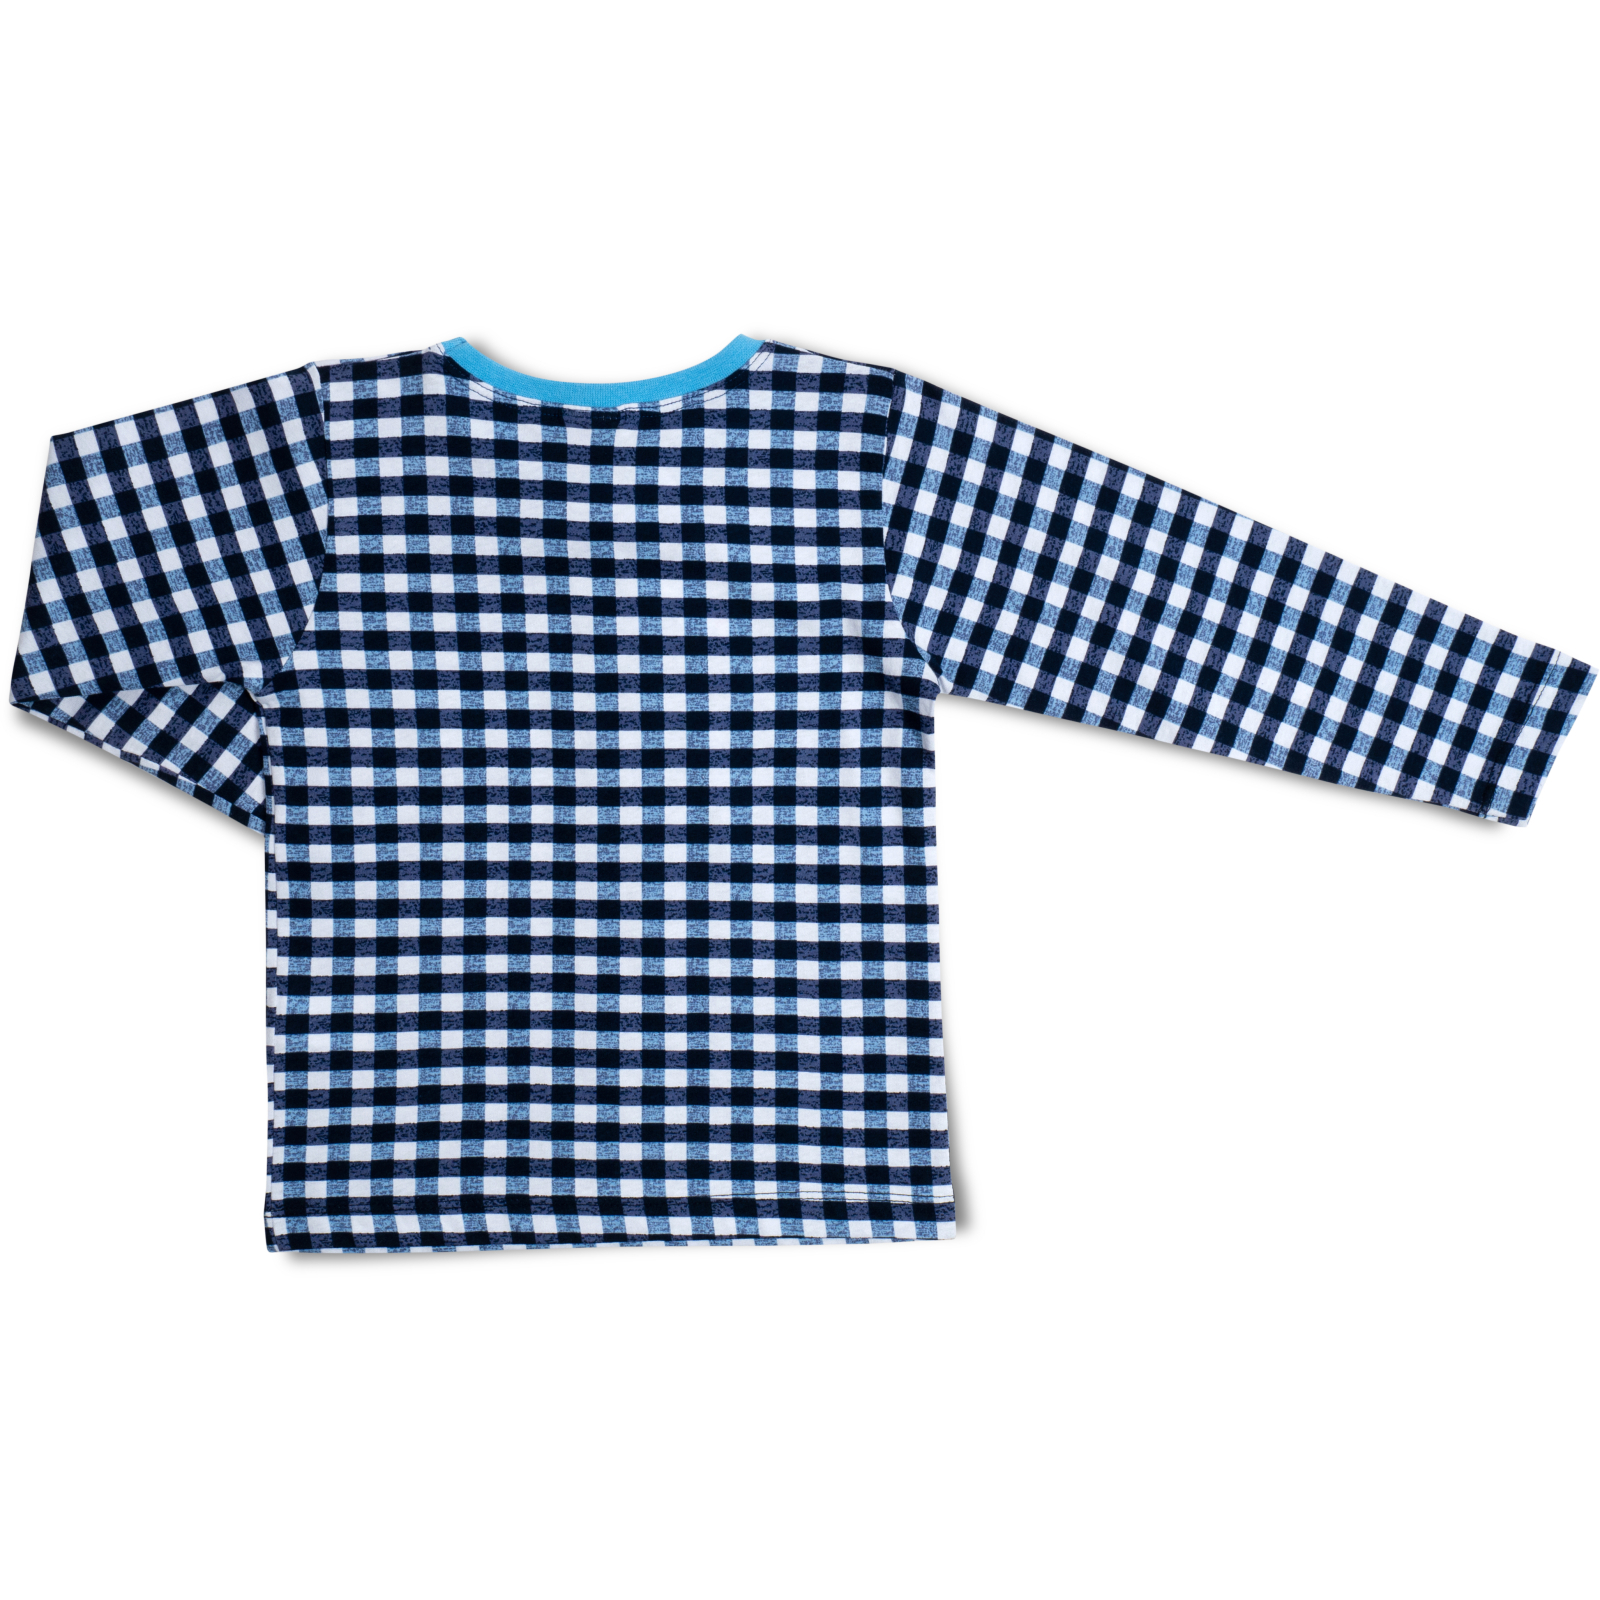 Пижама Breeze трикотажная (16030-122-blue) изображение 5